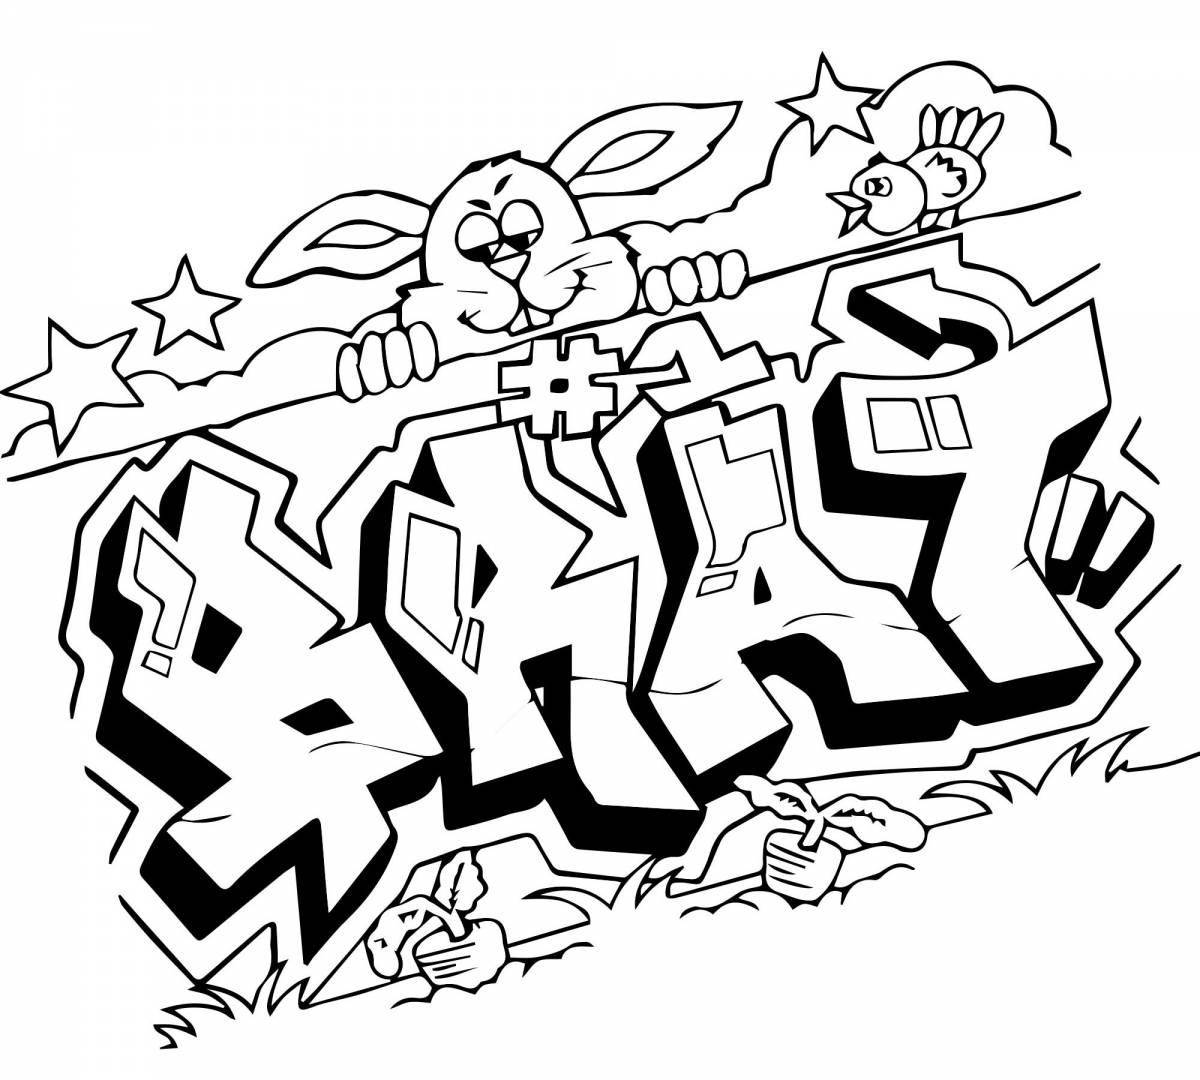 Динамический бум граффити